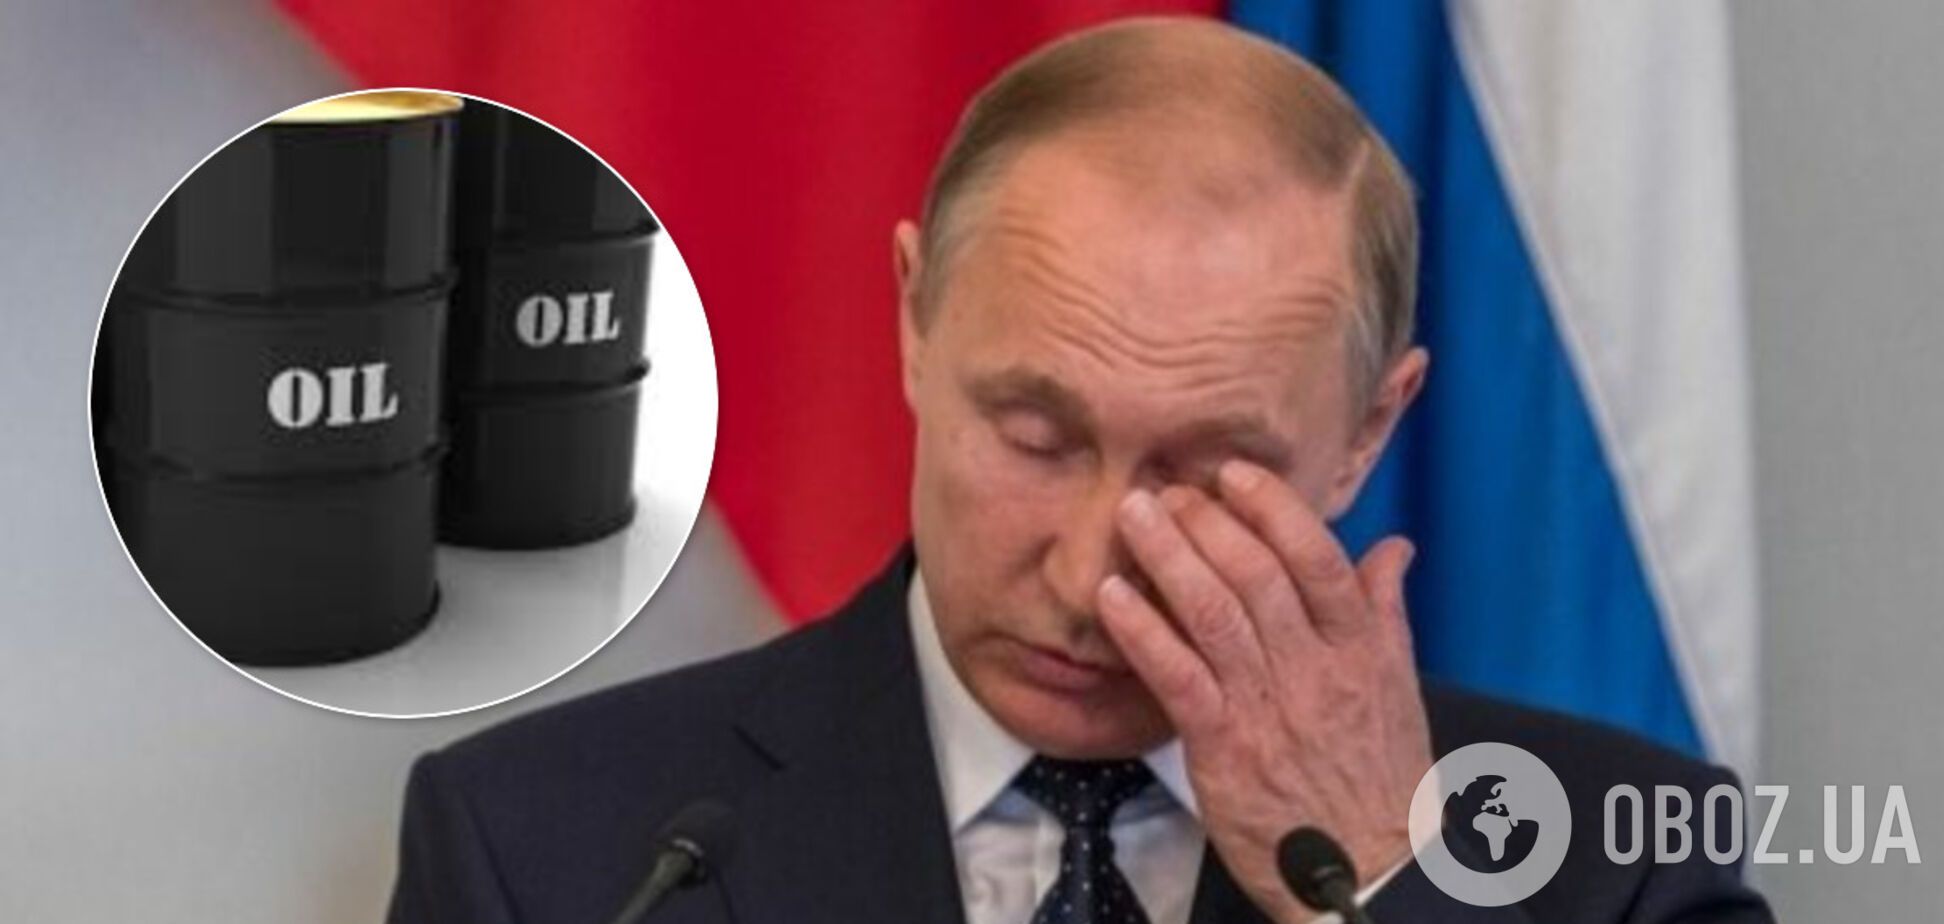 Через дешеву нафту Росія до травня втратить $1 млрд: у Кремлі забили на сполох